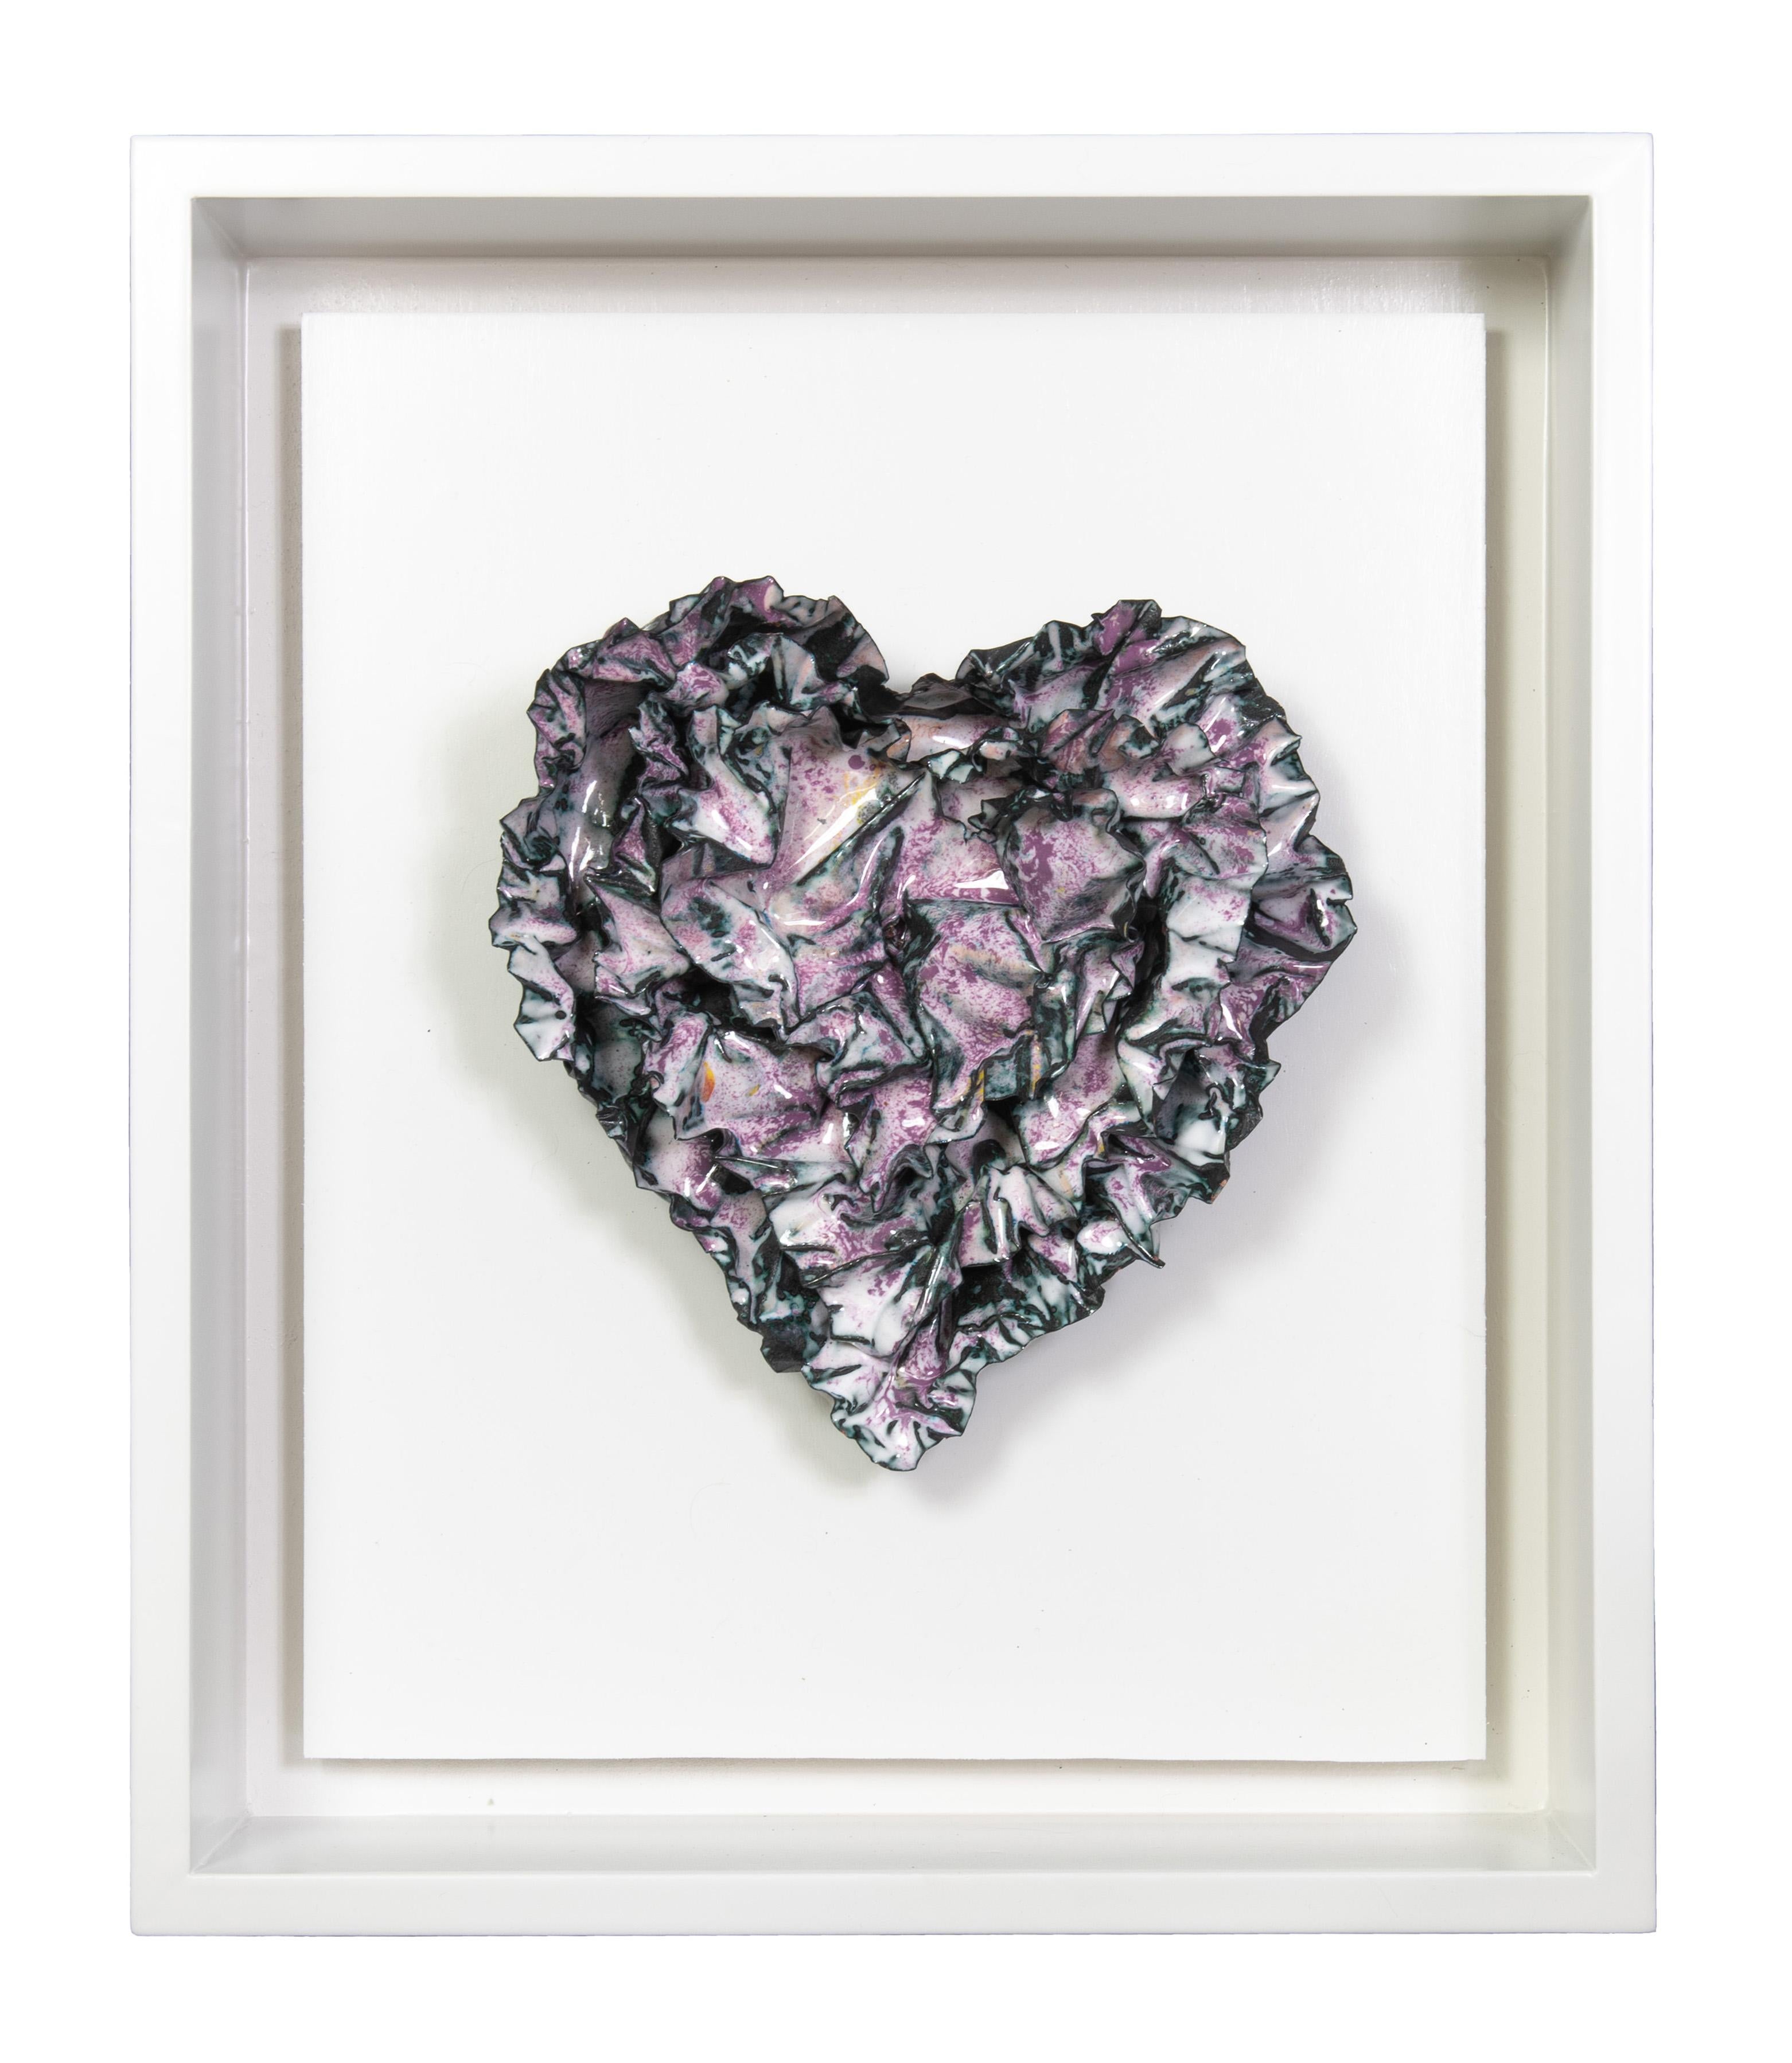 Sherry Been Abstract Sculpture - "Springtime Heart" Abstract Wall Art Sculpture, 2023